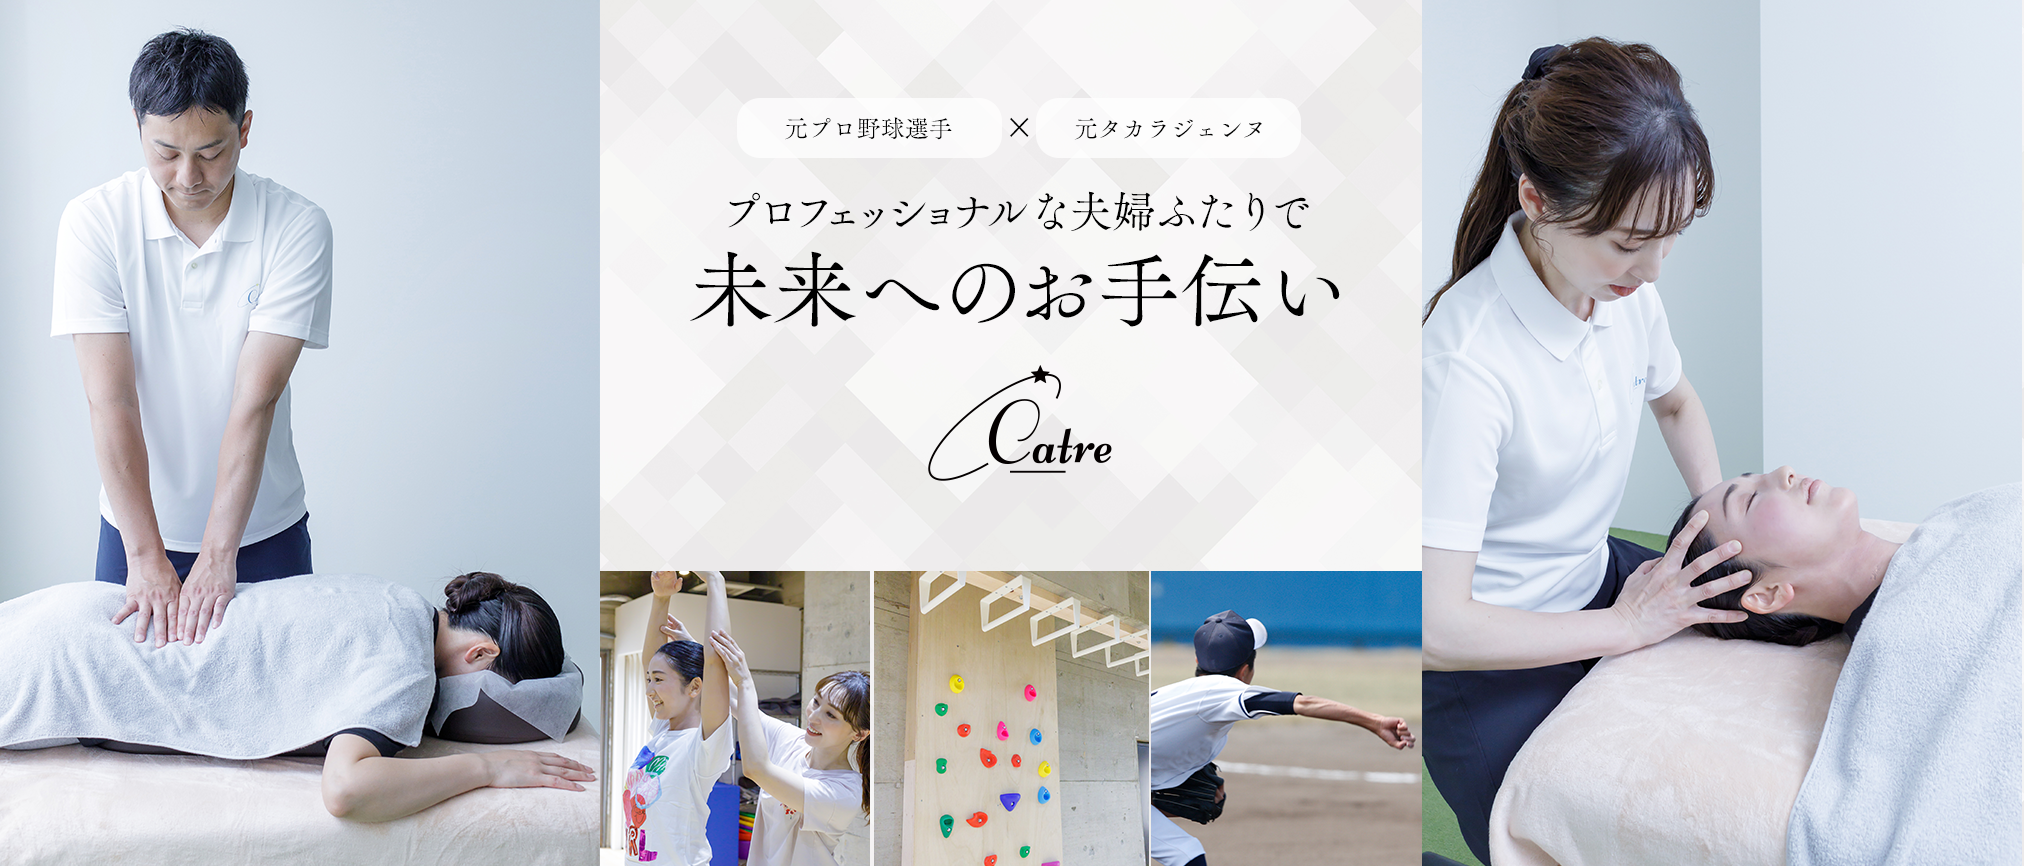 【元プロ野球選手×元タカラジェンヌ】プロフェッショナルなふたりで未来へのお手伝い【Catre okusawa】